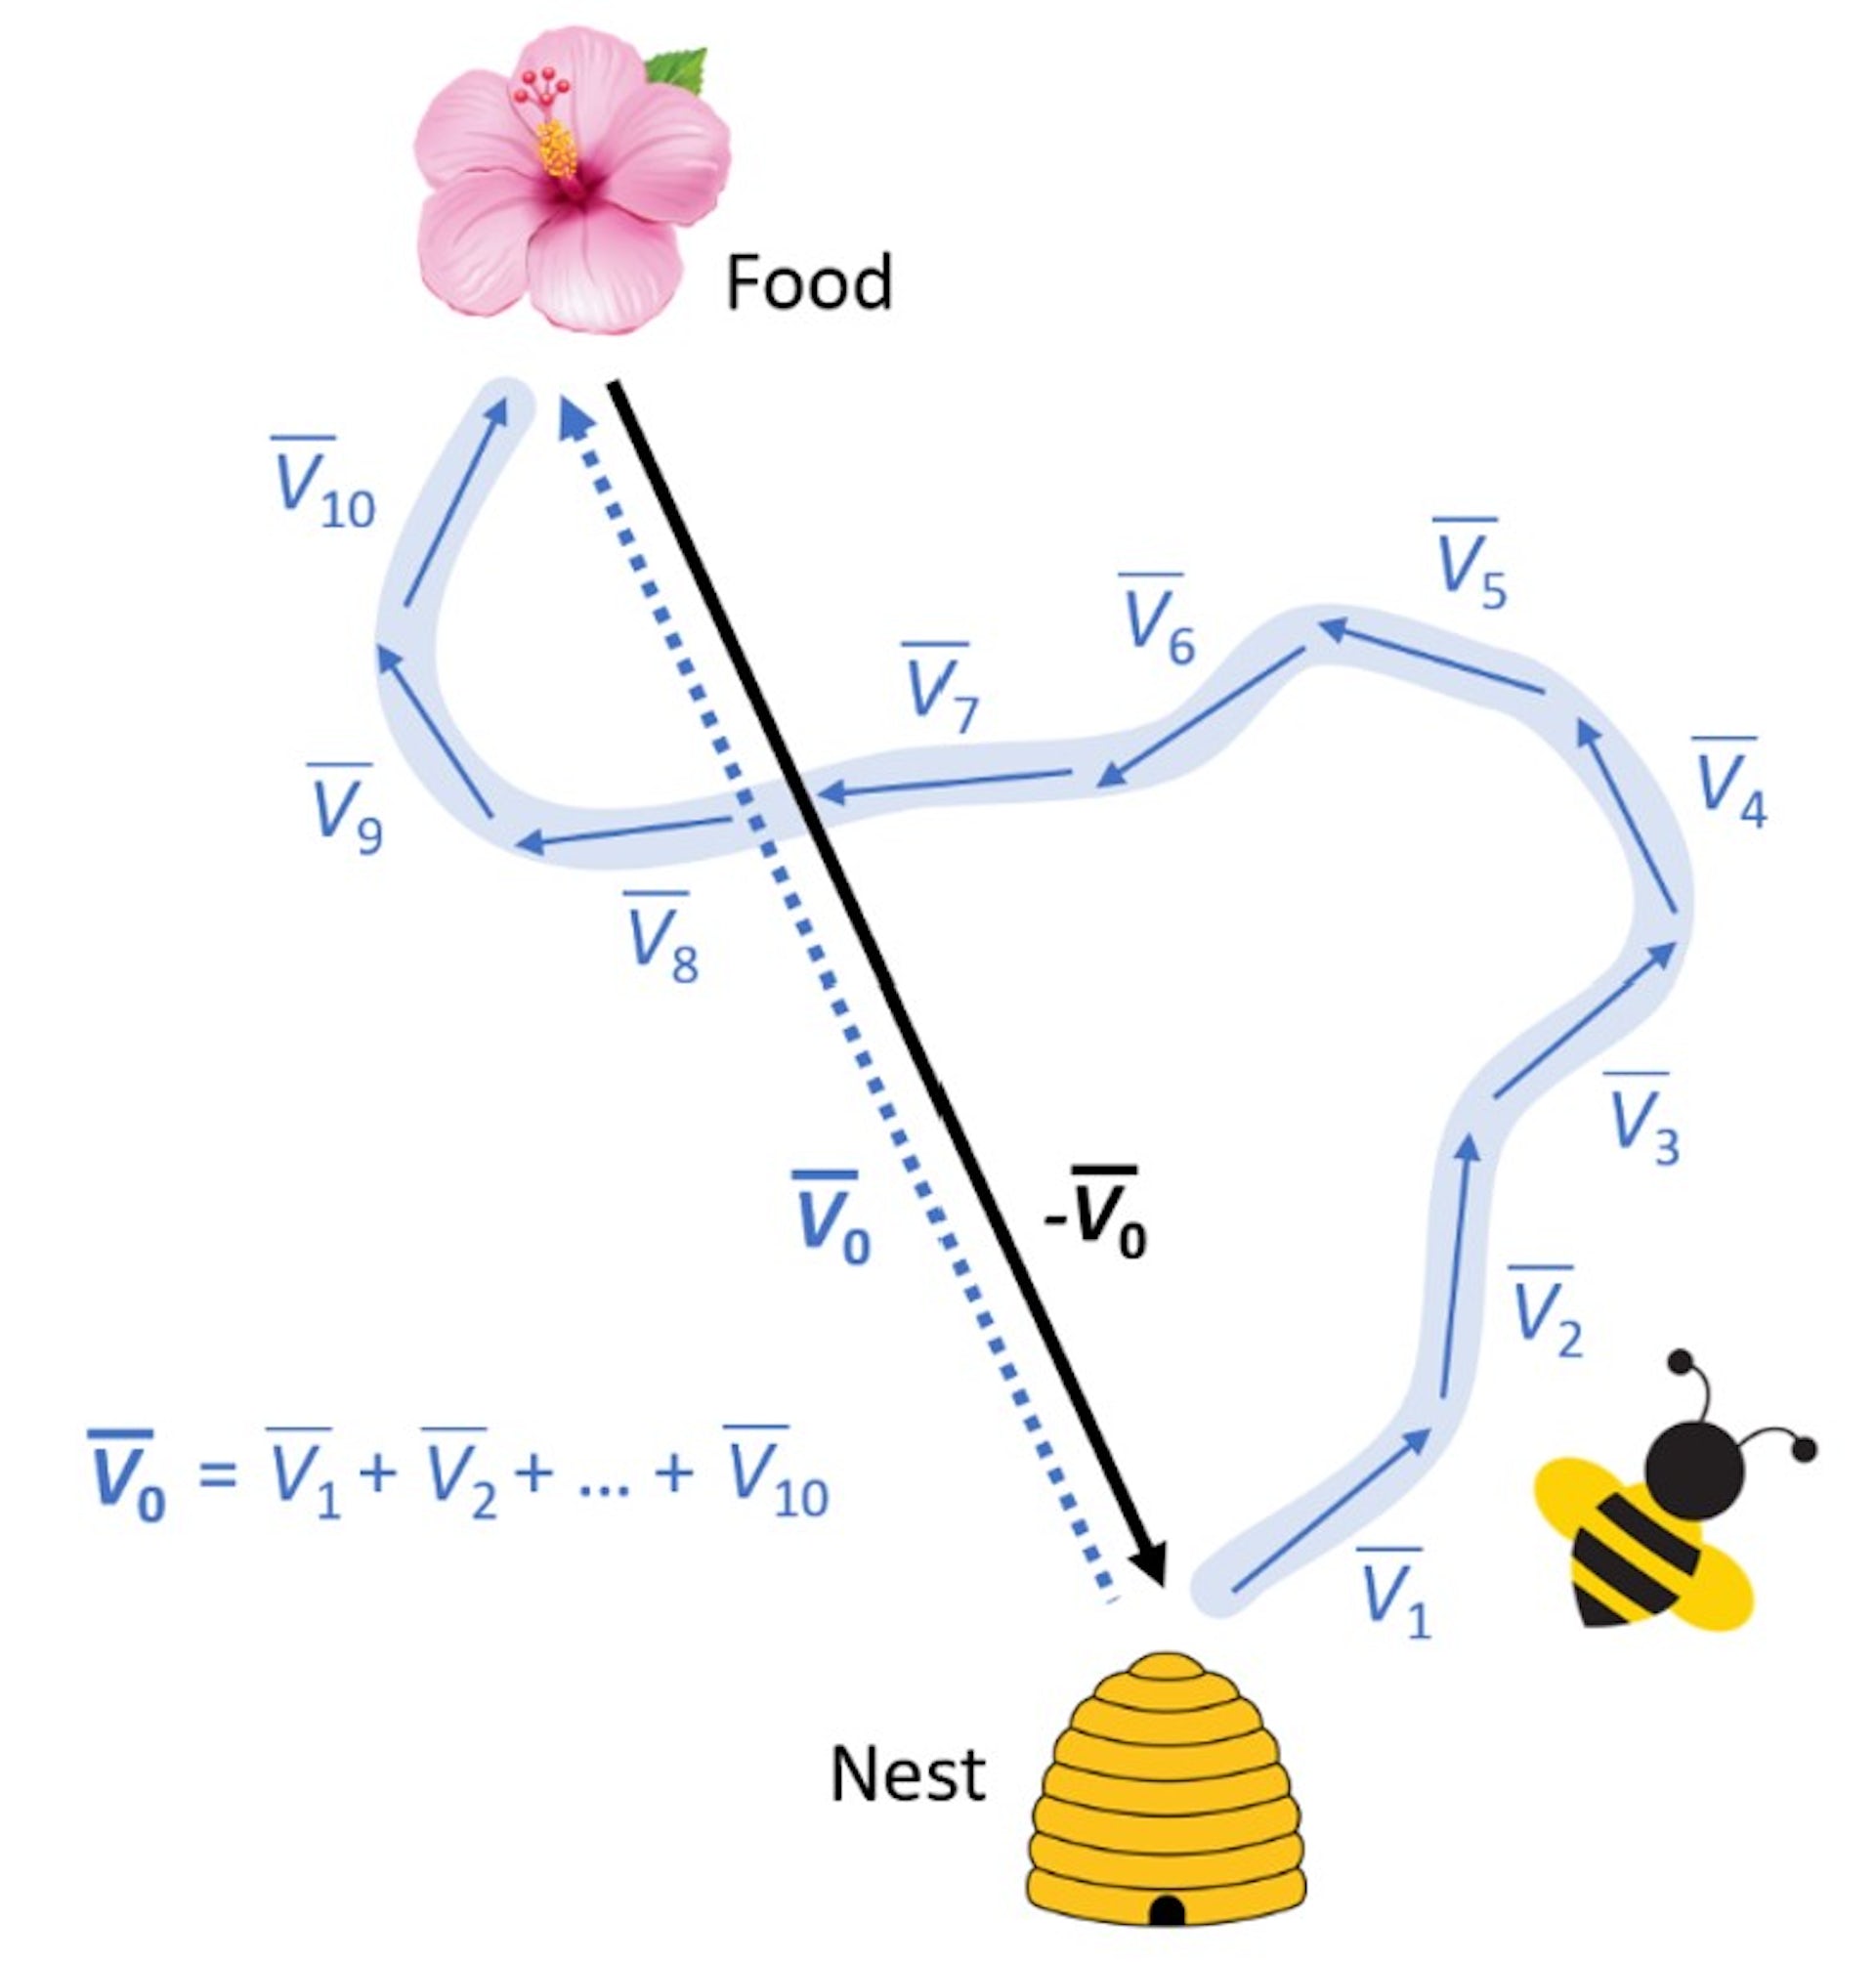 نموداری که پرواز زیگزاگ زنبور و مسیر مستقیم خانه را نشان می دهد.